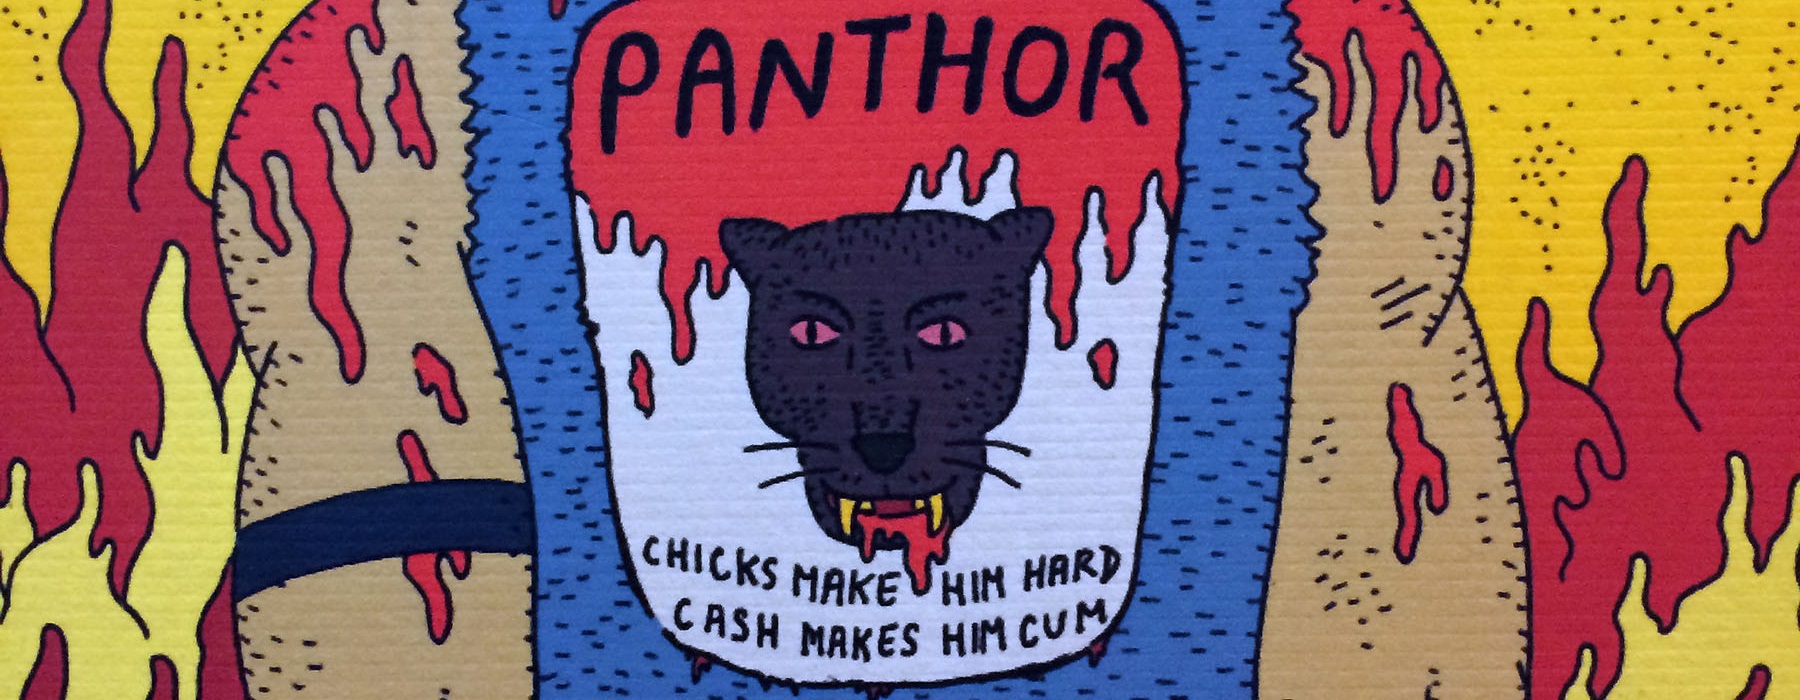 panthor_banner